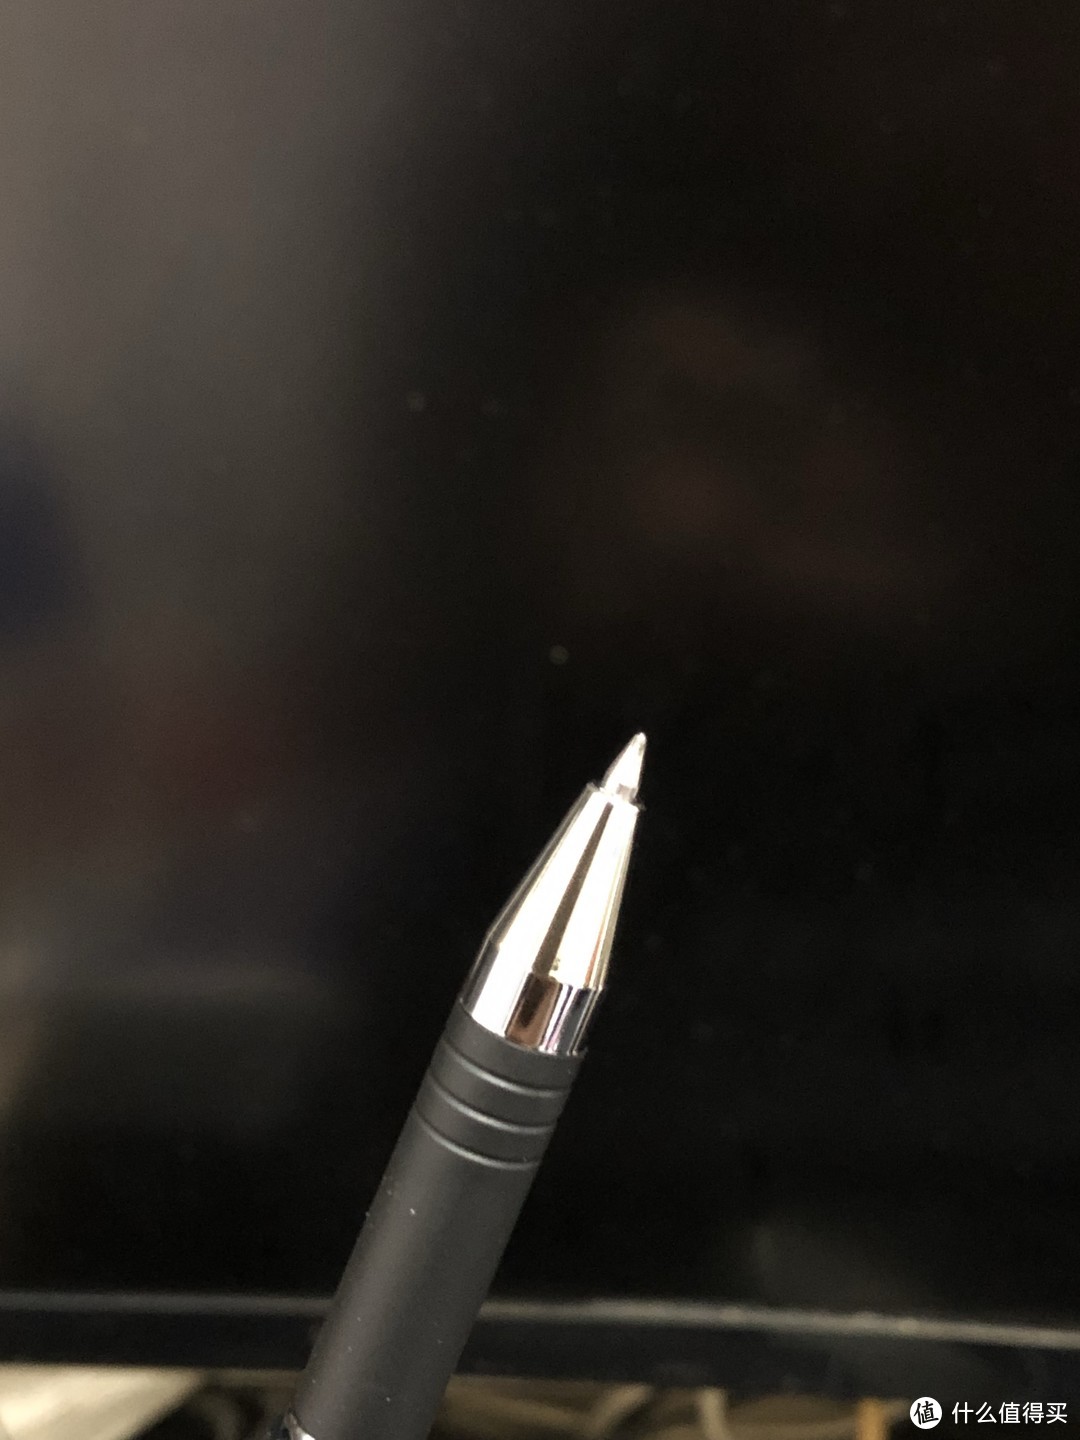 斑马的这支笔尖很干净，一点溢出油墨也没有